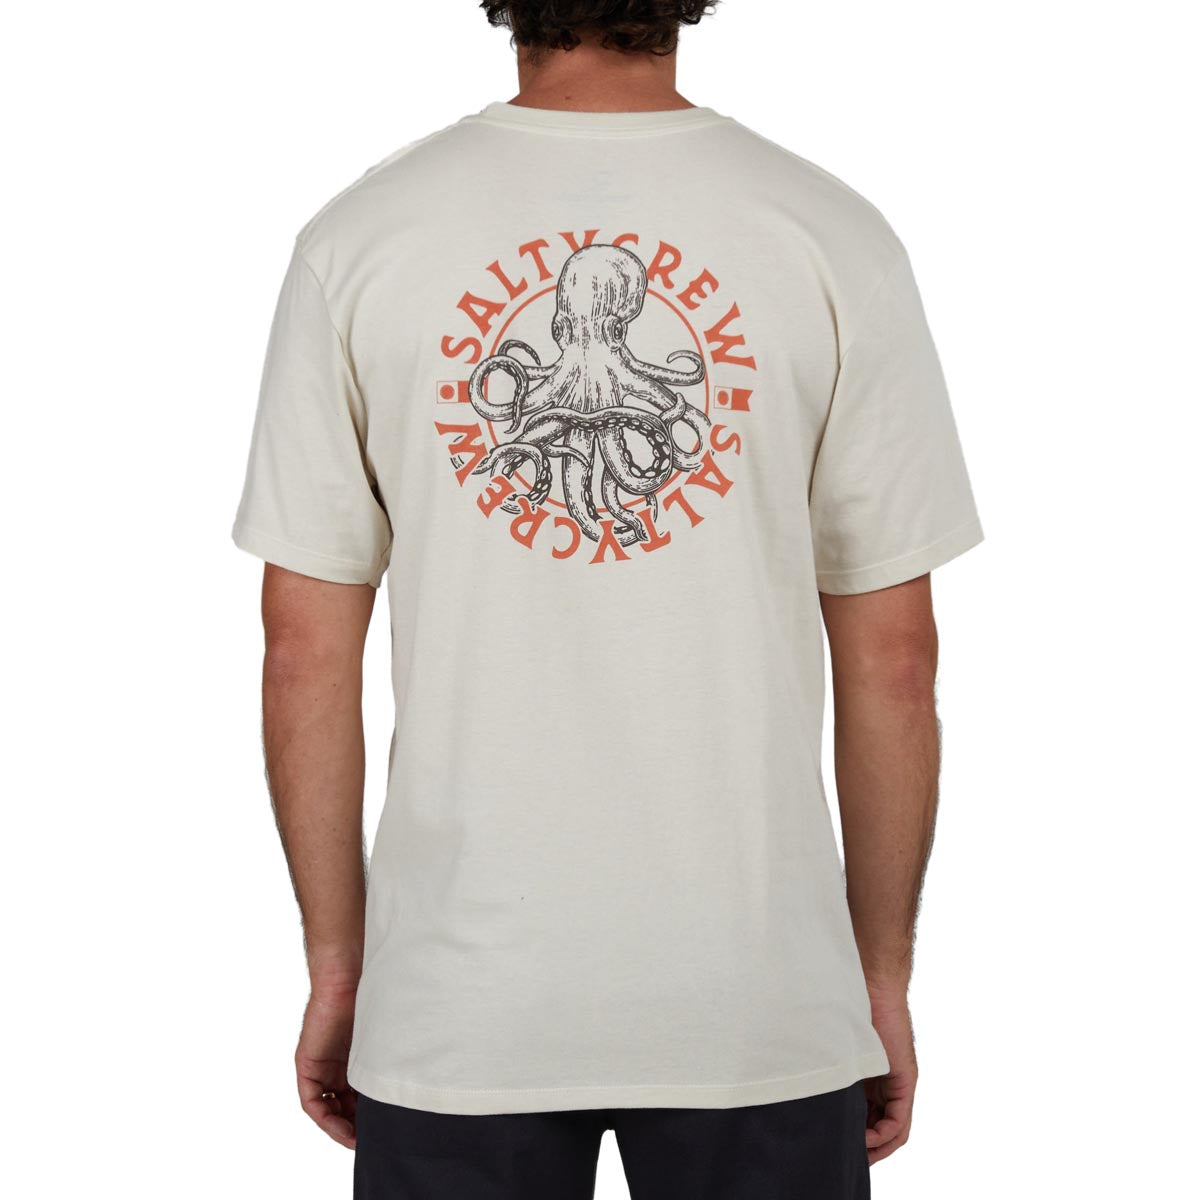 Salty Crew Tentacles Premium T-Shirt - Bone image 2